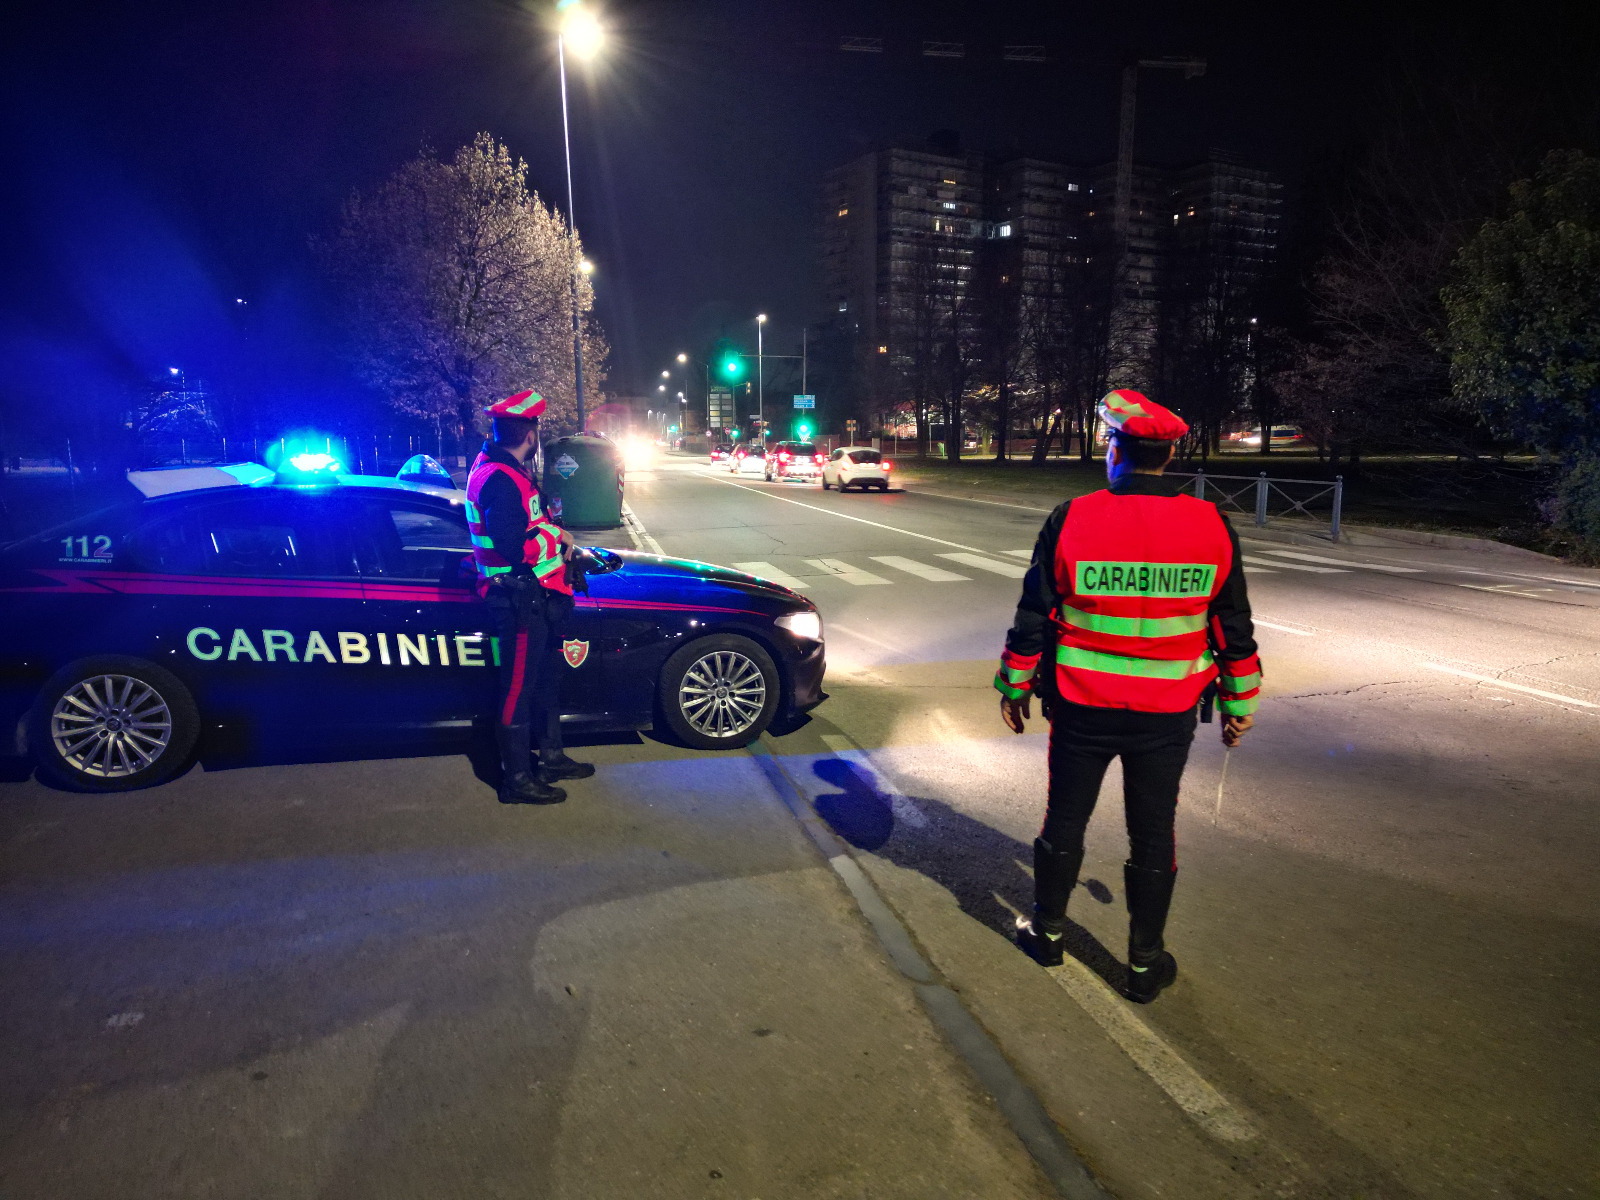  Carabinieri setacciano la città, 813 persone controllate